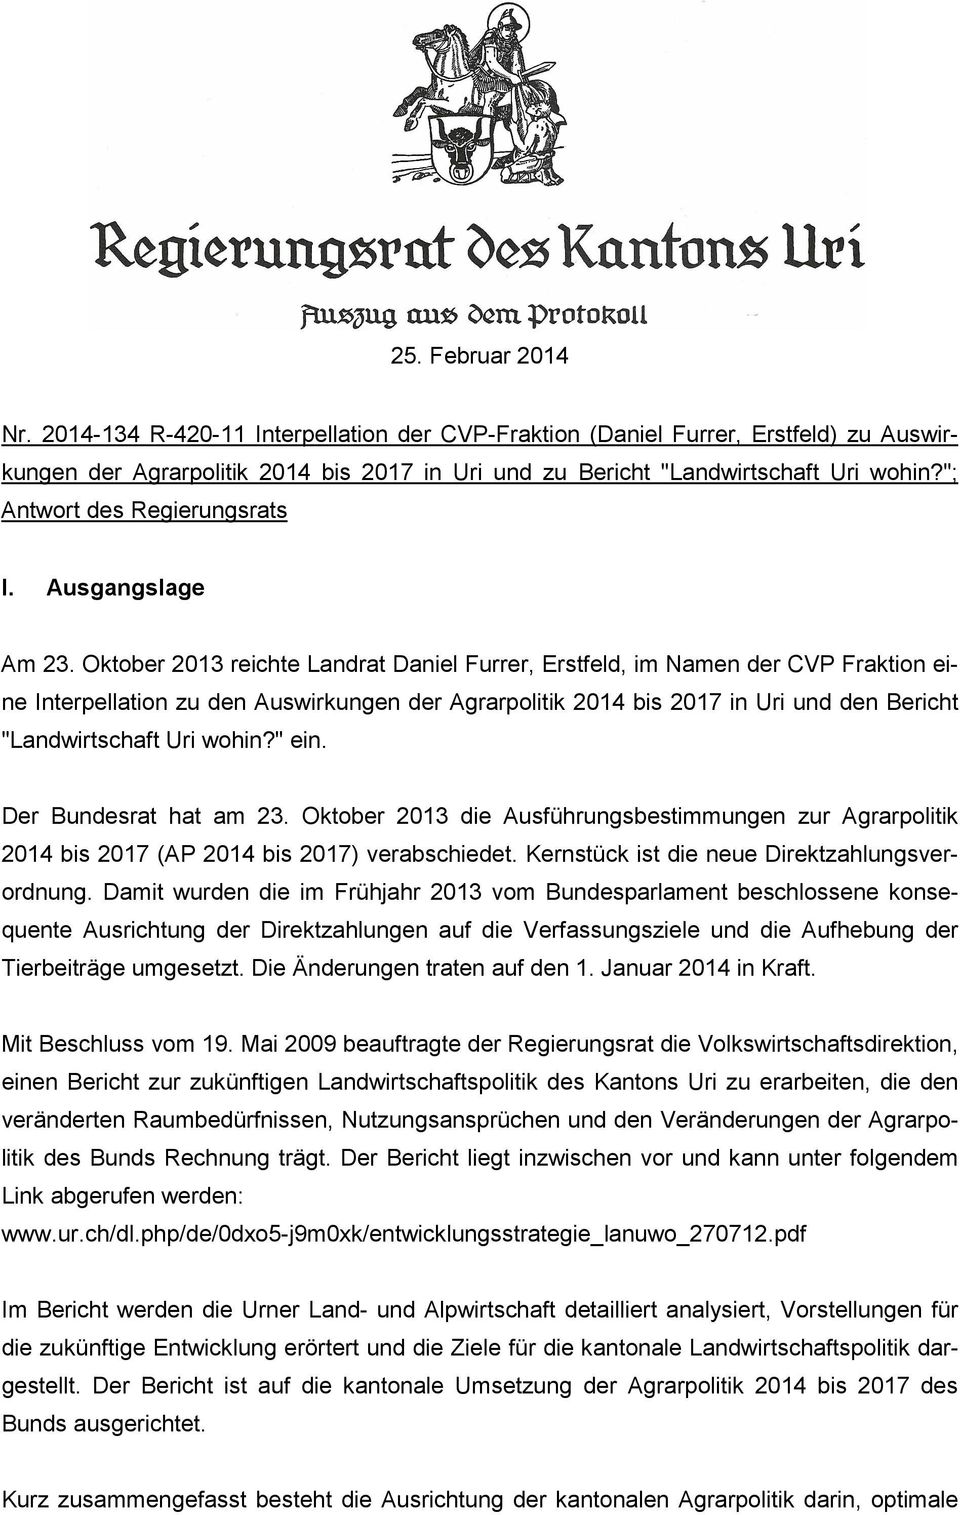 Oktober 2013 reichte Landrat Daniel Furrer, Erstfeld, im Namen der CVP Fraktion eine Interpellation zu den Auswirkungen der Agrarpolitik 2014 bis 2017 in Uri und den Bericht "Landwirtschaft Uri wohin?